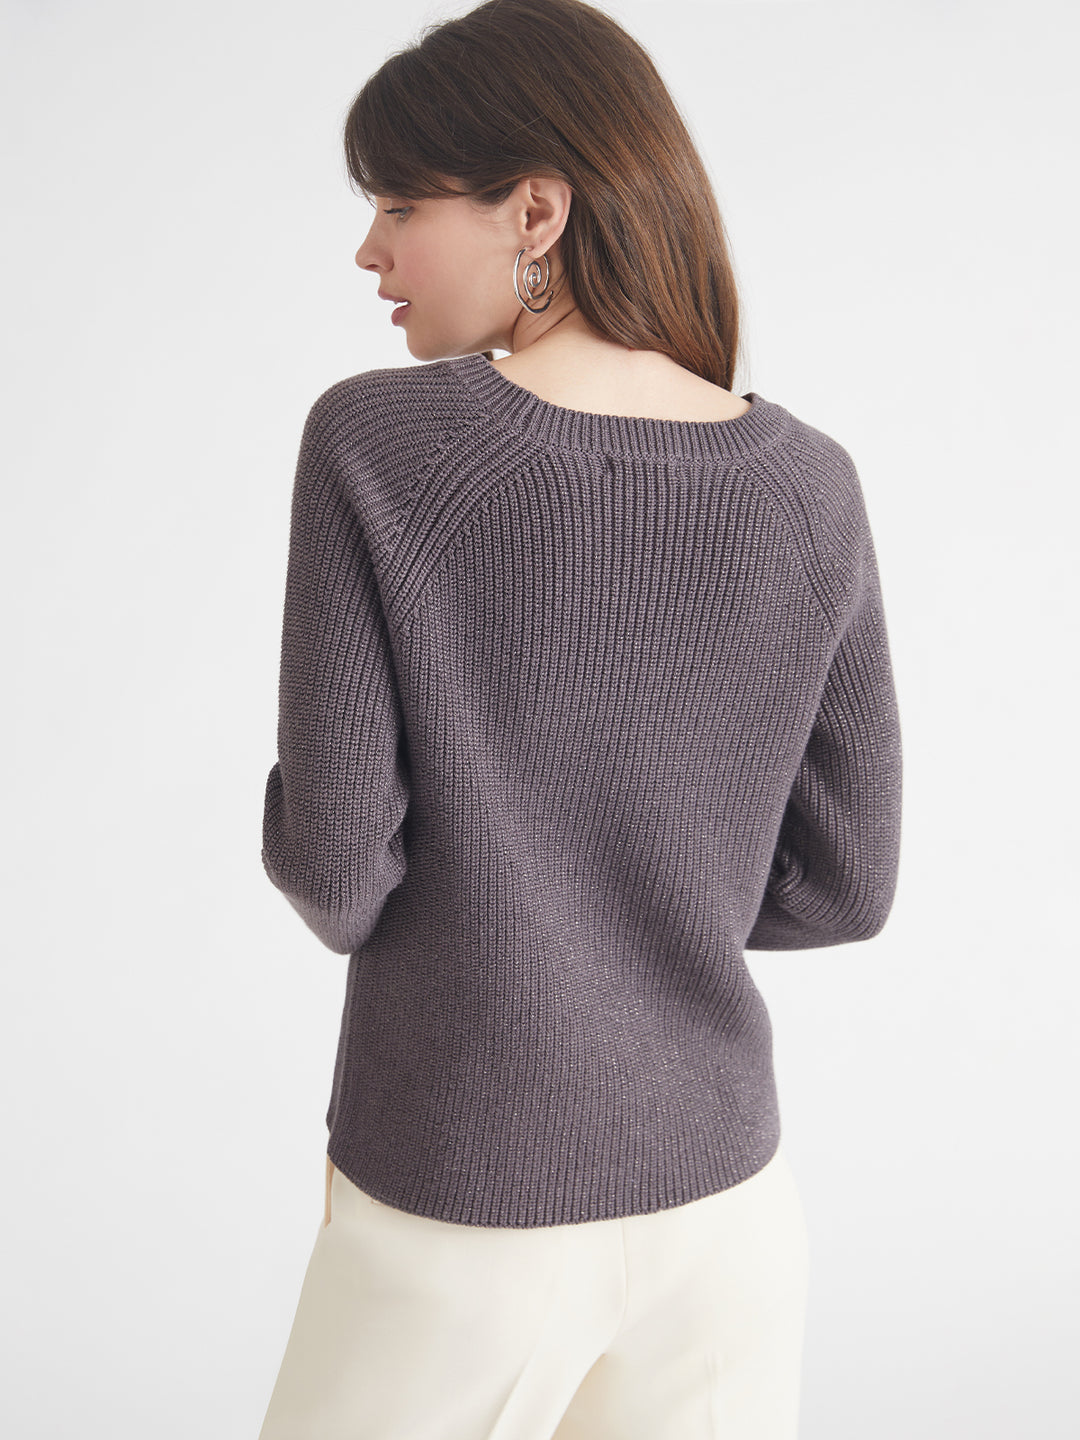 Jane Metallic Crewneck Sweater in Charcoal